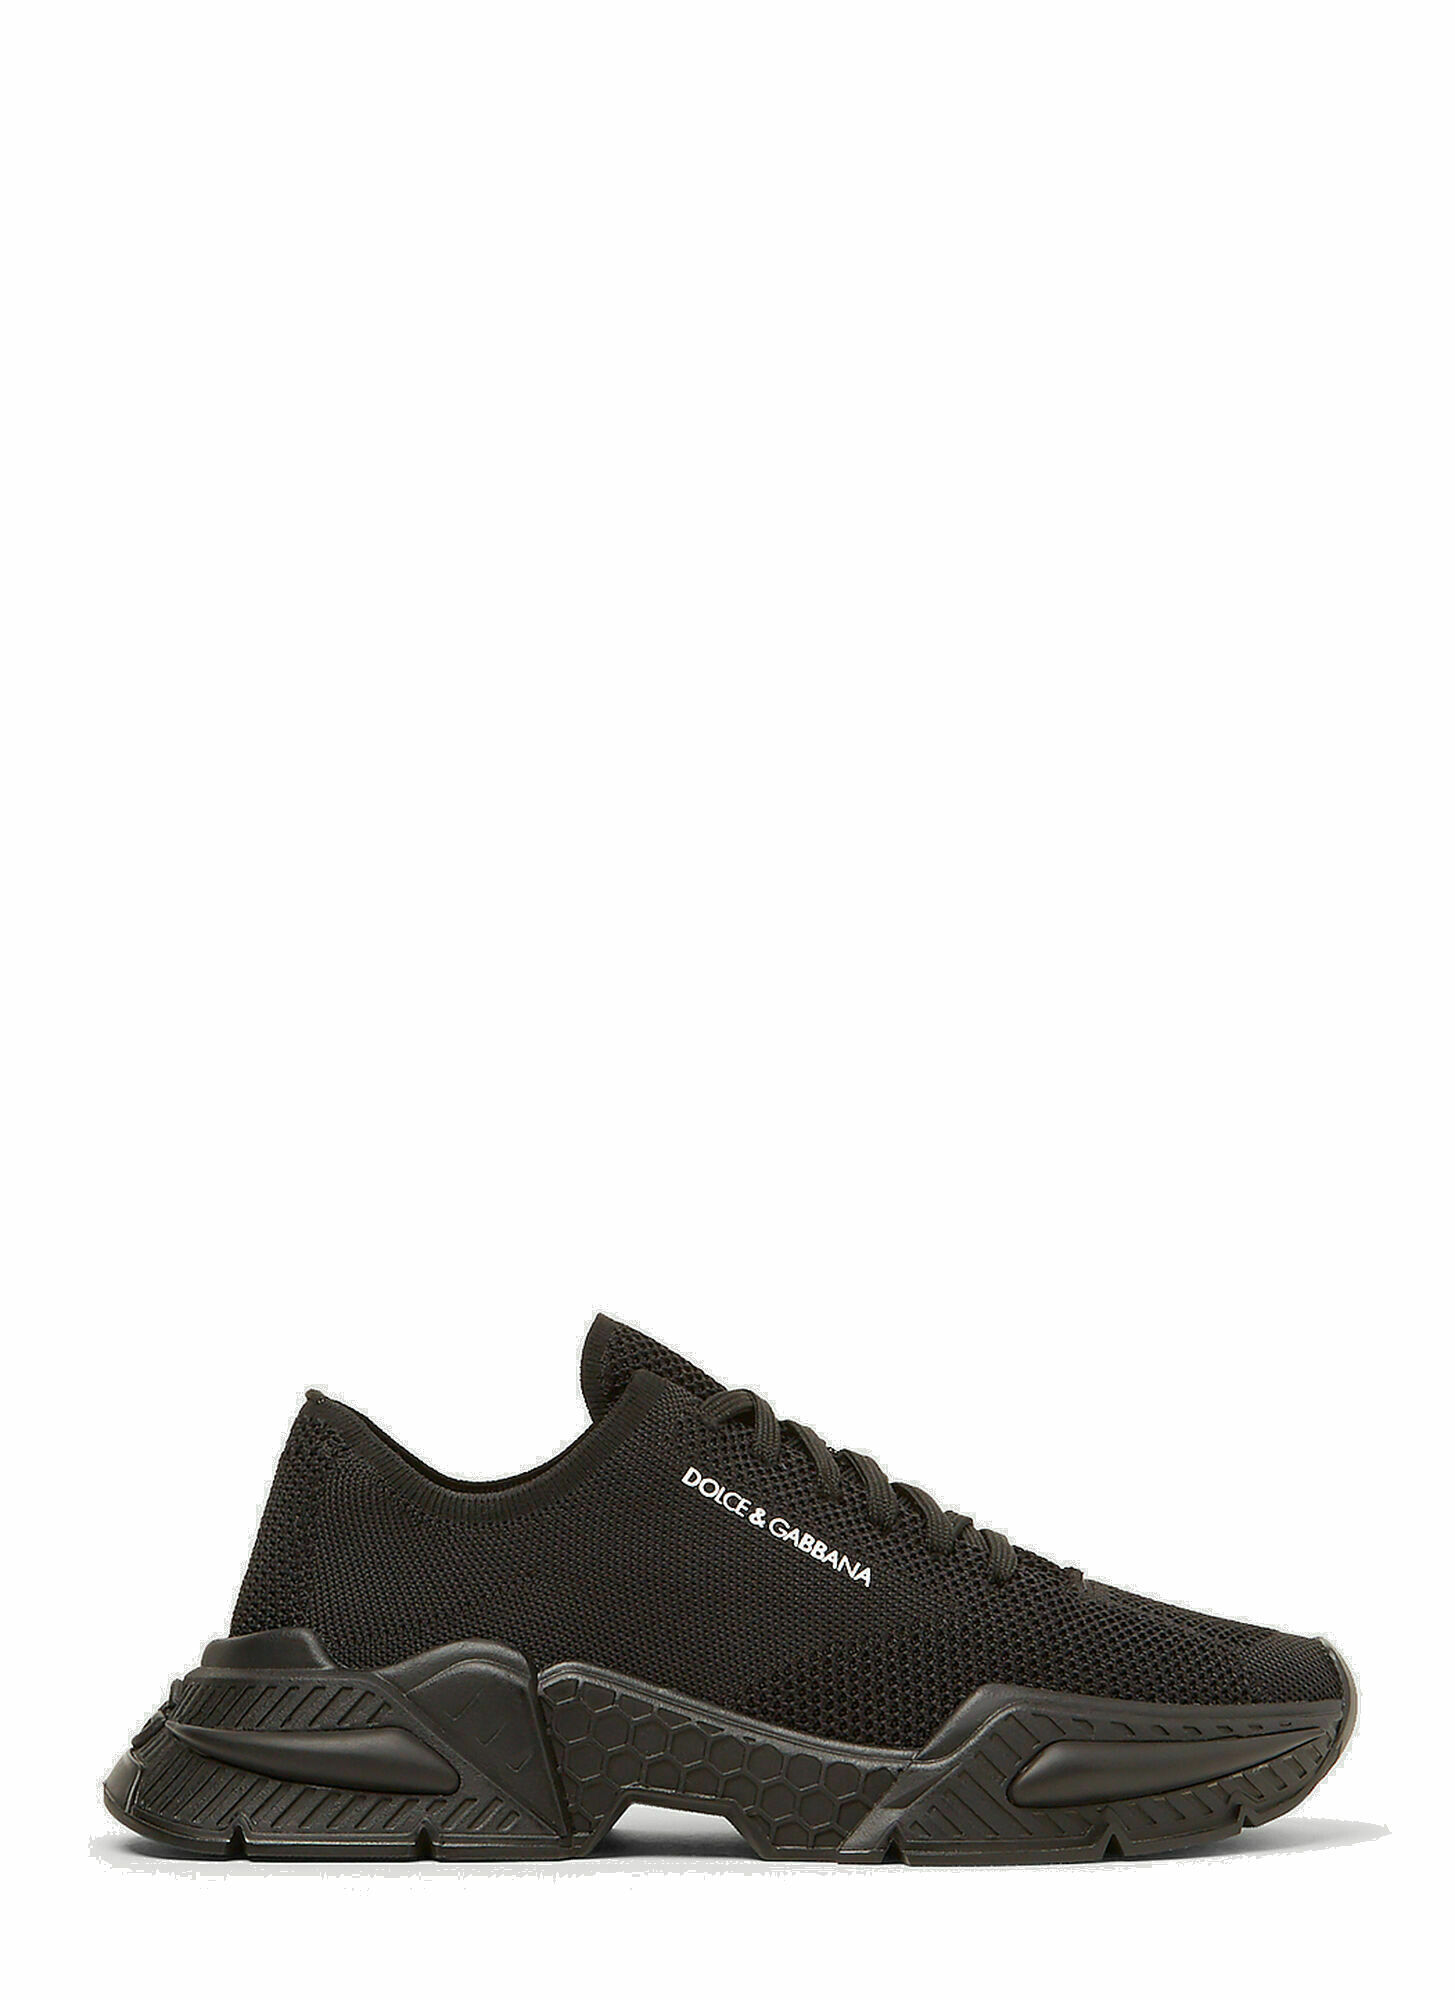 Photo: Mesh Airmaster Sneakers in Black